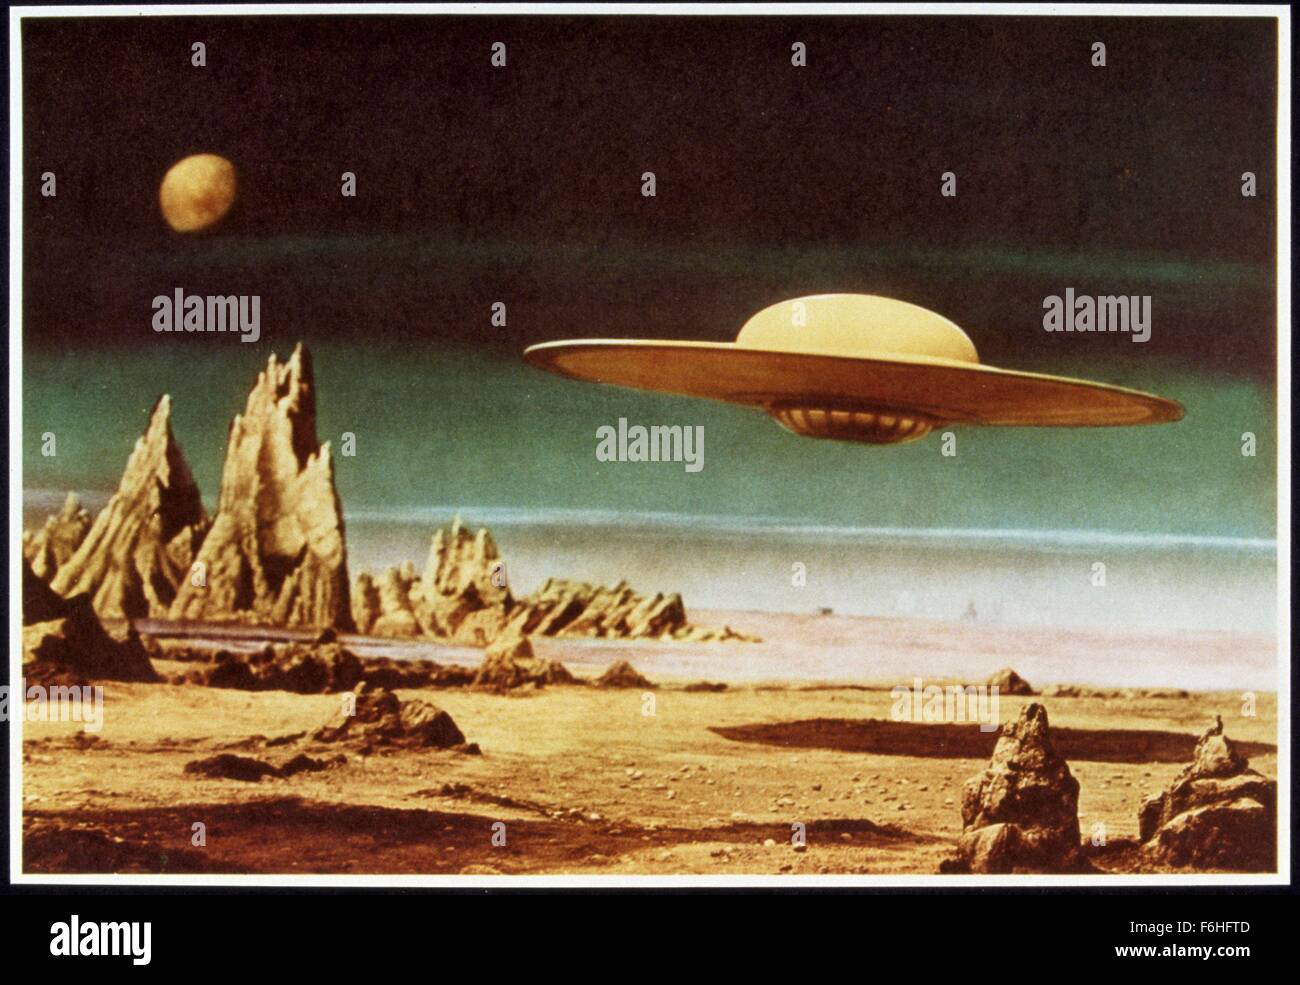 1956, le titre du film : Planète interdite, Directeur : FRED McLEOD WILCOX, Studio : MGM, Photo : ROBOTS-ANDROIDS-CYBORGS-CLONES, SCI-FI, l'exploration spatiale, la tempête, l'espace, SOUCOUPE VOLANTE, UFO, Désert, Planète, lune, vol. (Crédit Image : SNAP) Banque D'Images